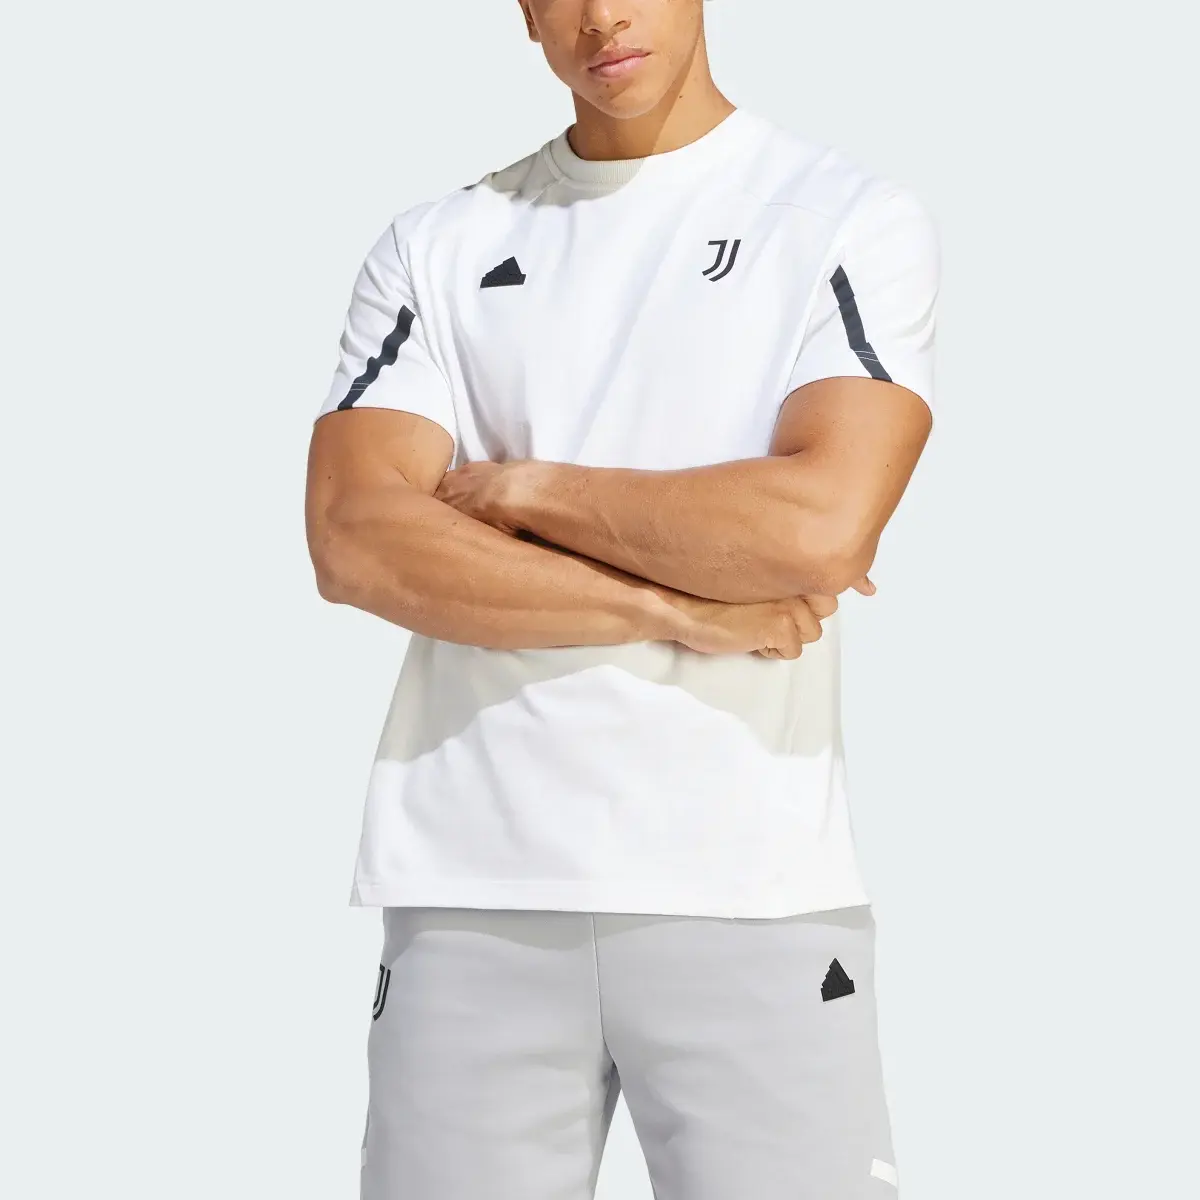 Adidas T-shirt Juventus Designed for Gameday. 1